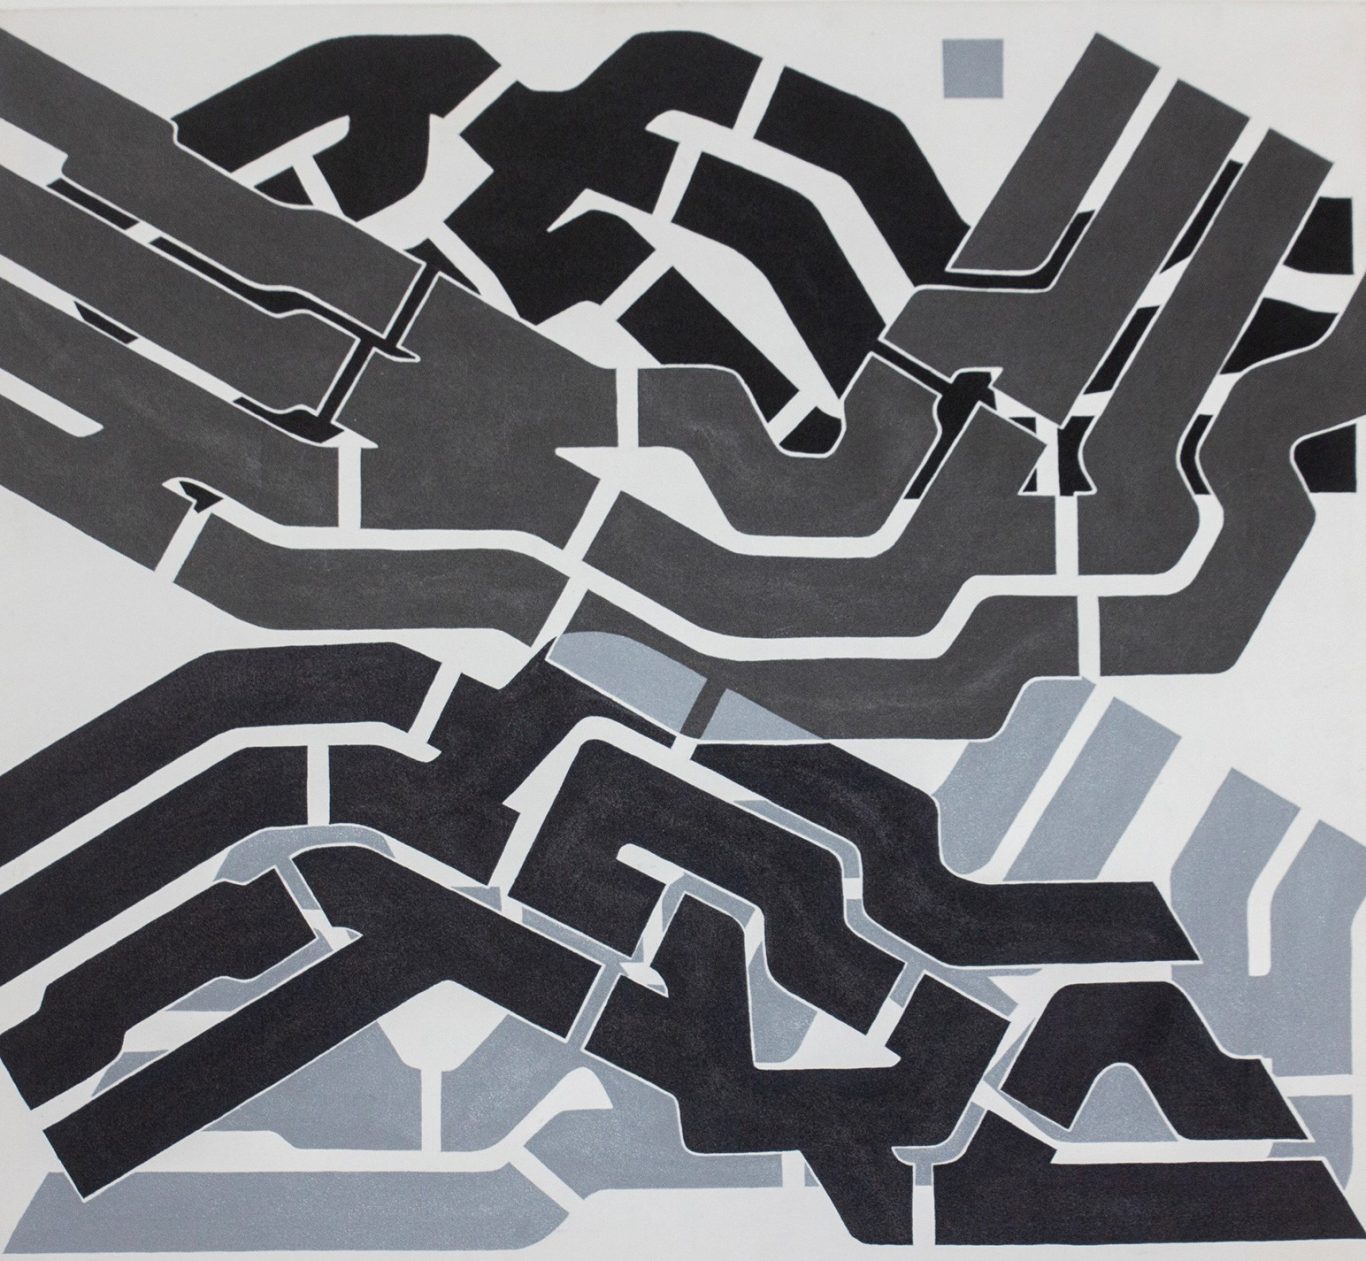 Arturo Wong. S/t, 2919, de la serie Habana Bauhaus. Acrílico sobre lienzo, 70 x 63.5 cm.
